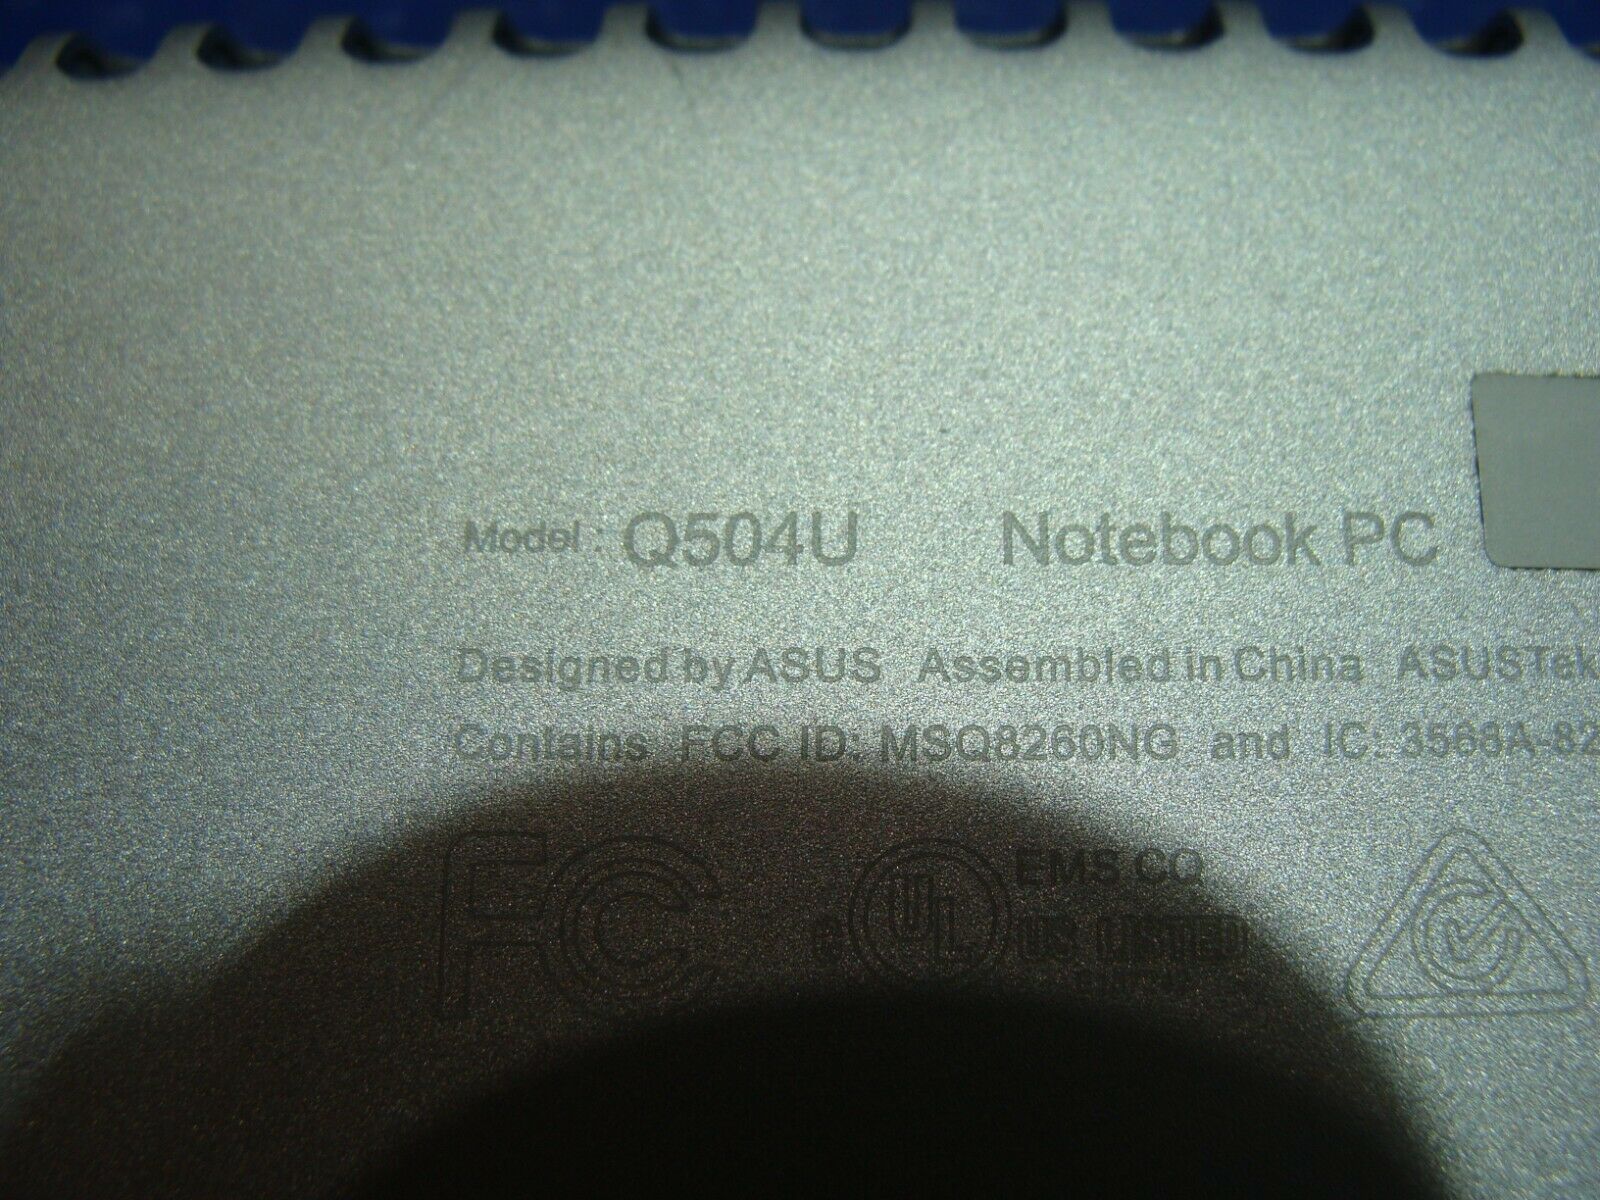 Asus Q504U 15.6